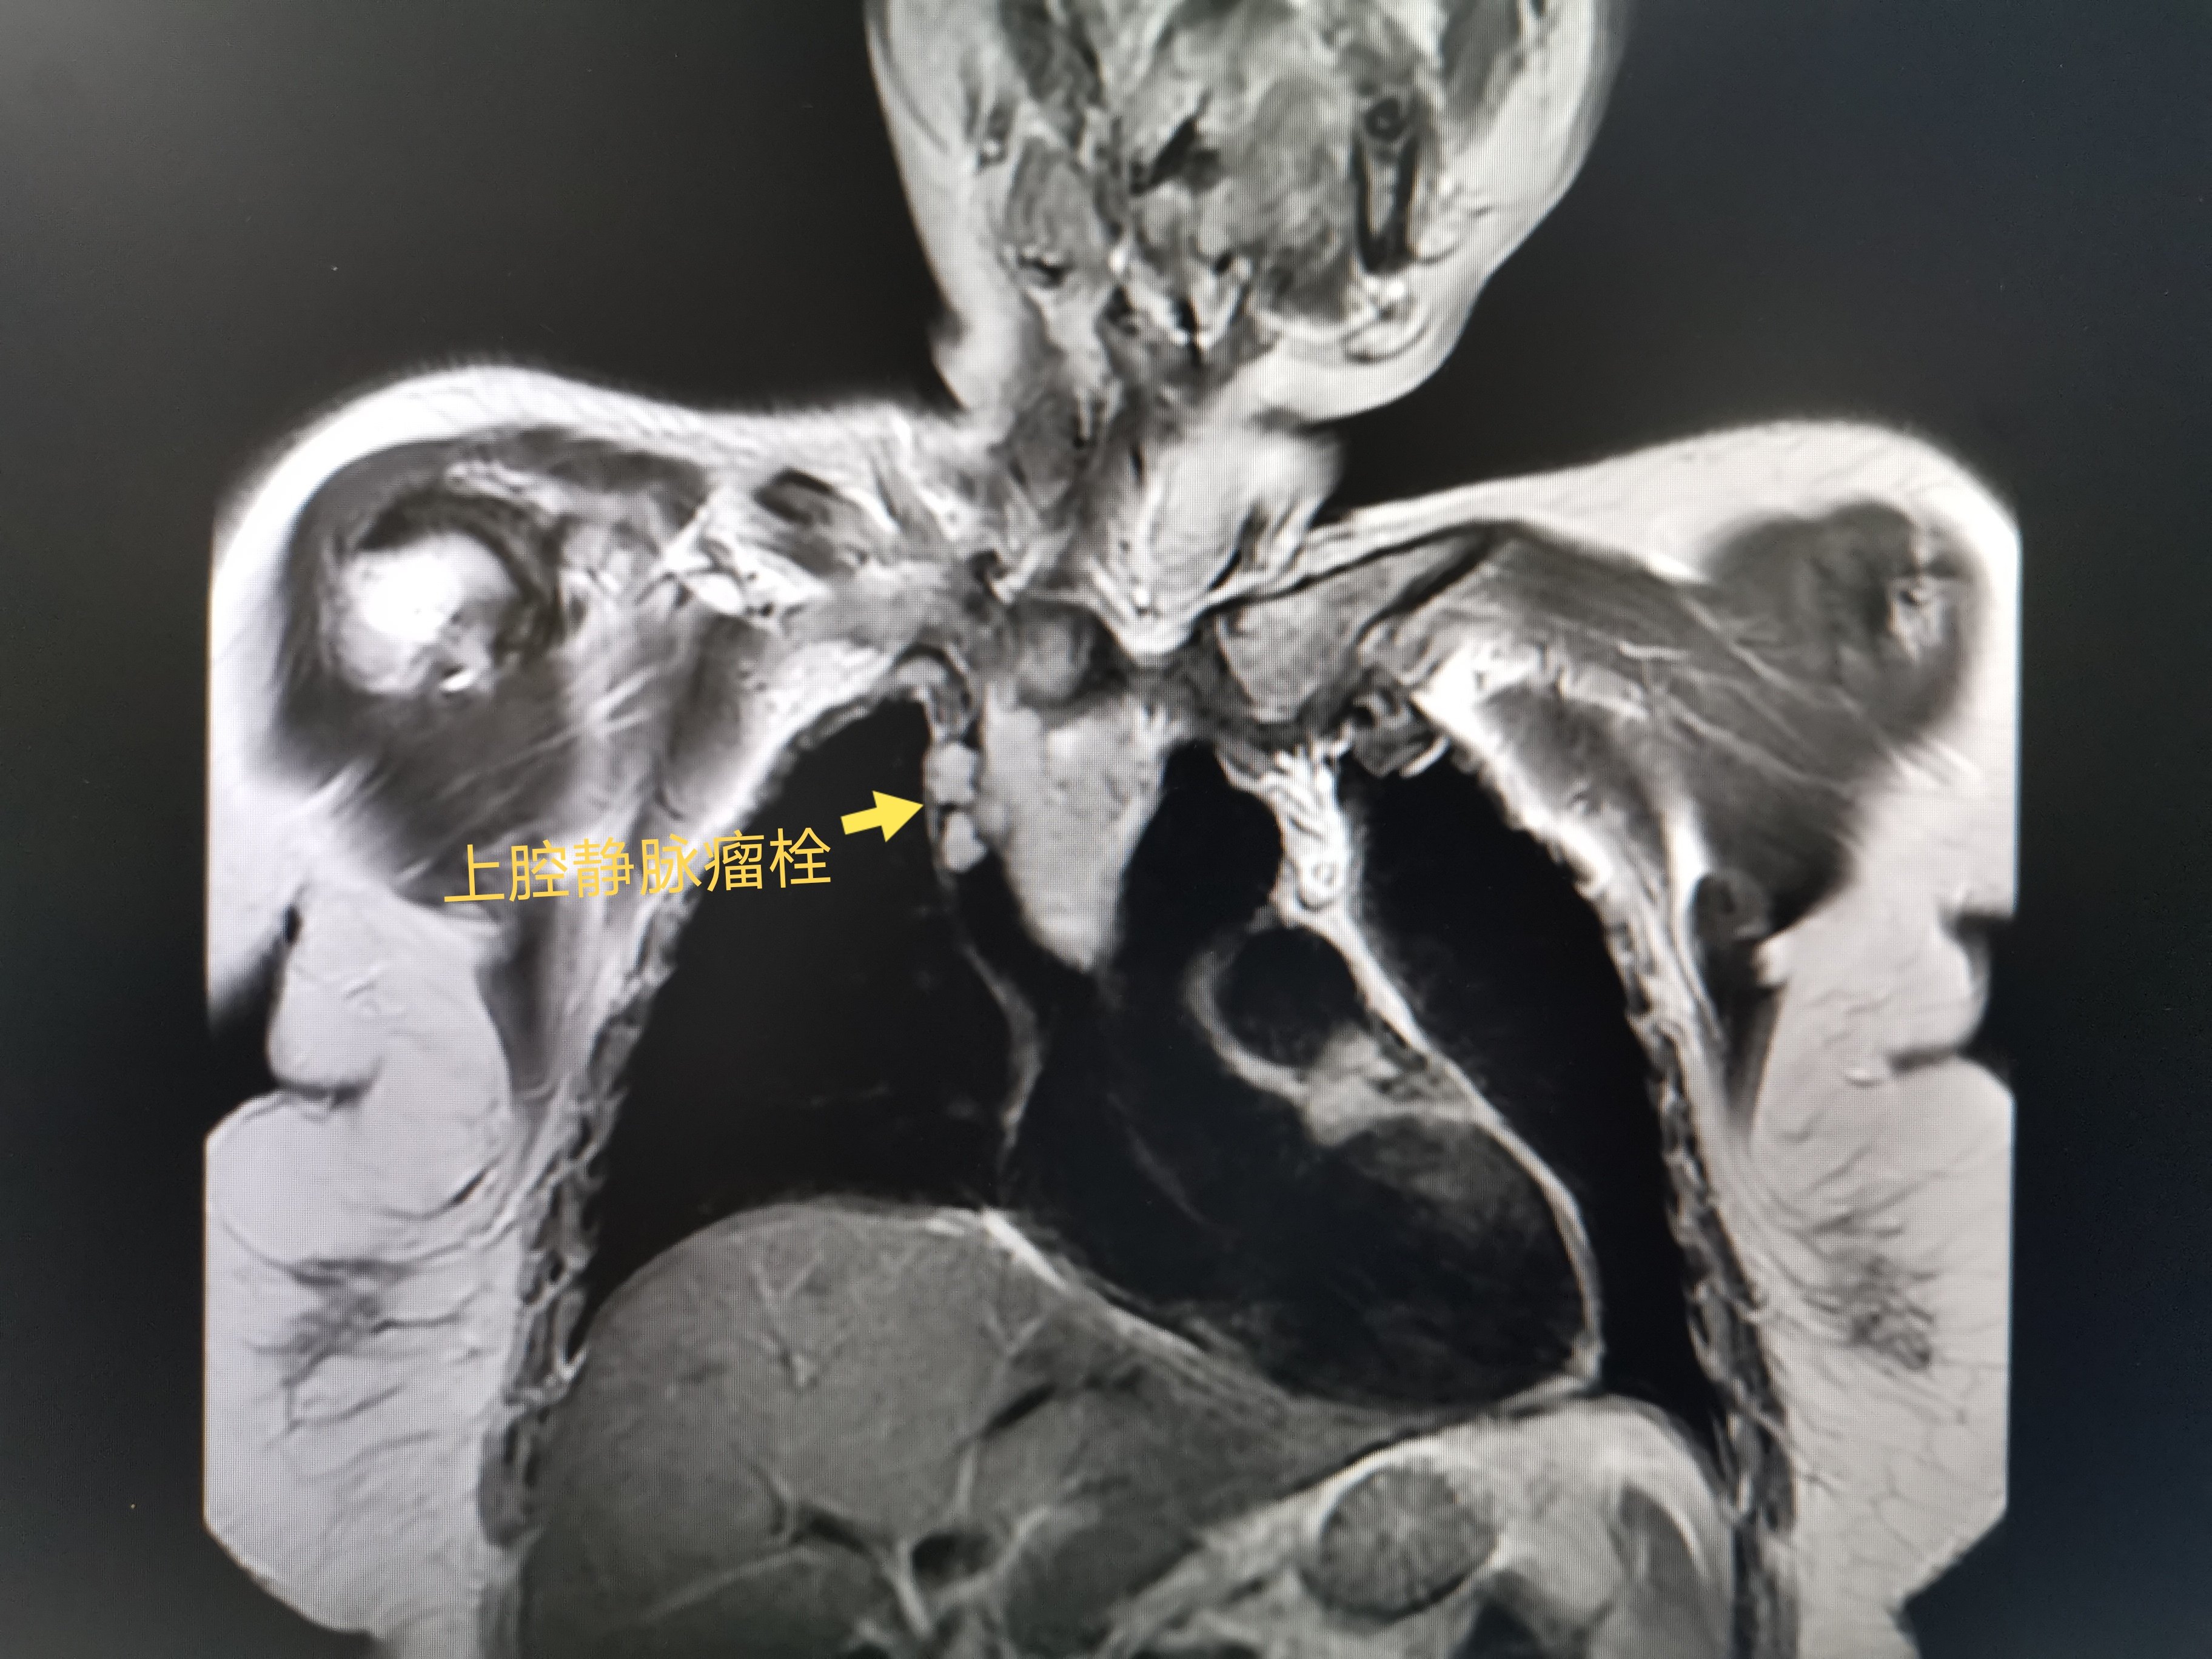 甲状腺癌外院术后颈部及纵隔淋巴结转移侵及右无名静脉上腔静脉瘤栓